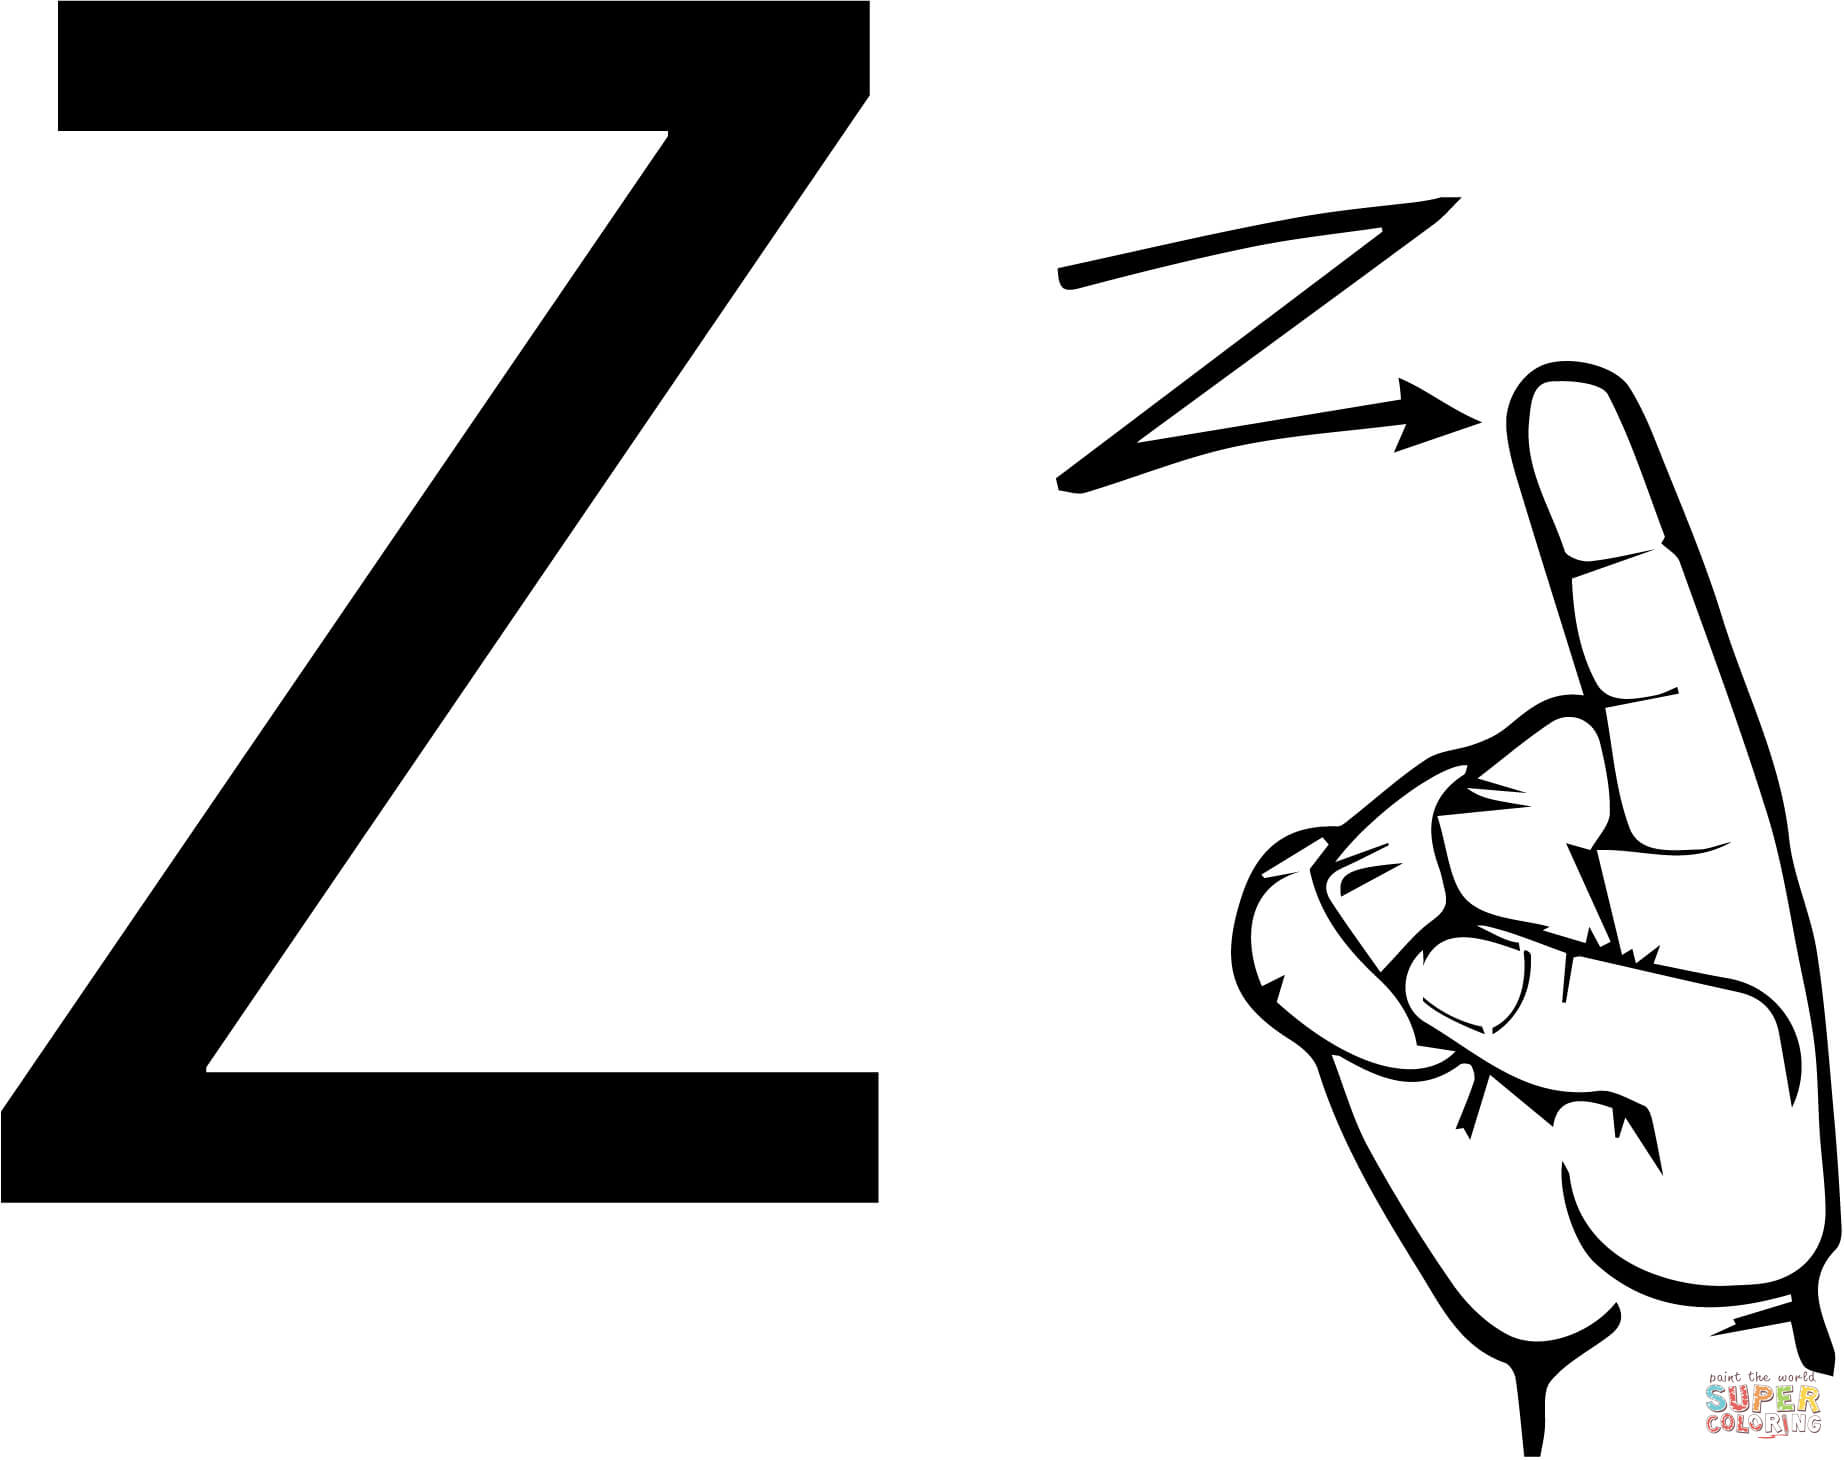 ASL 手语字母 Z 来自字母 Z